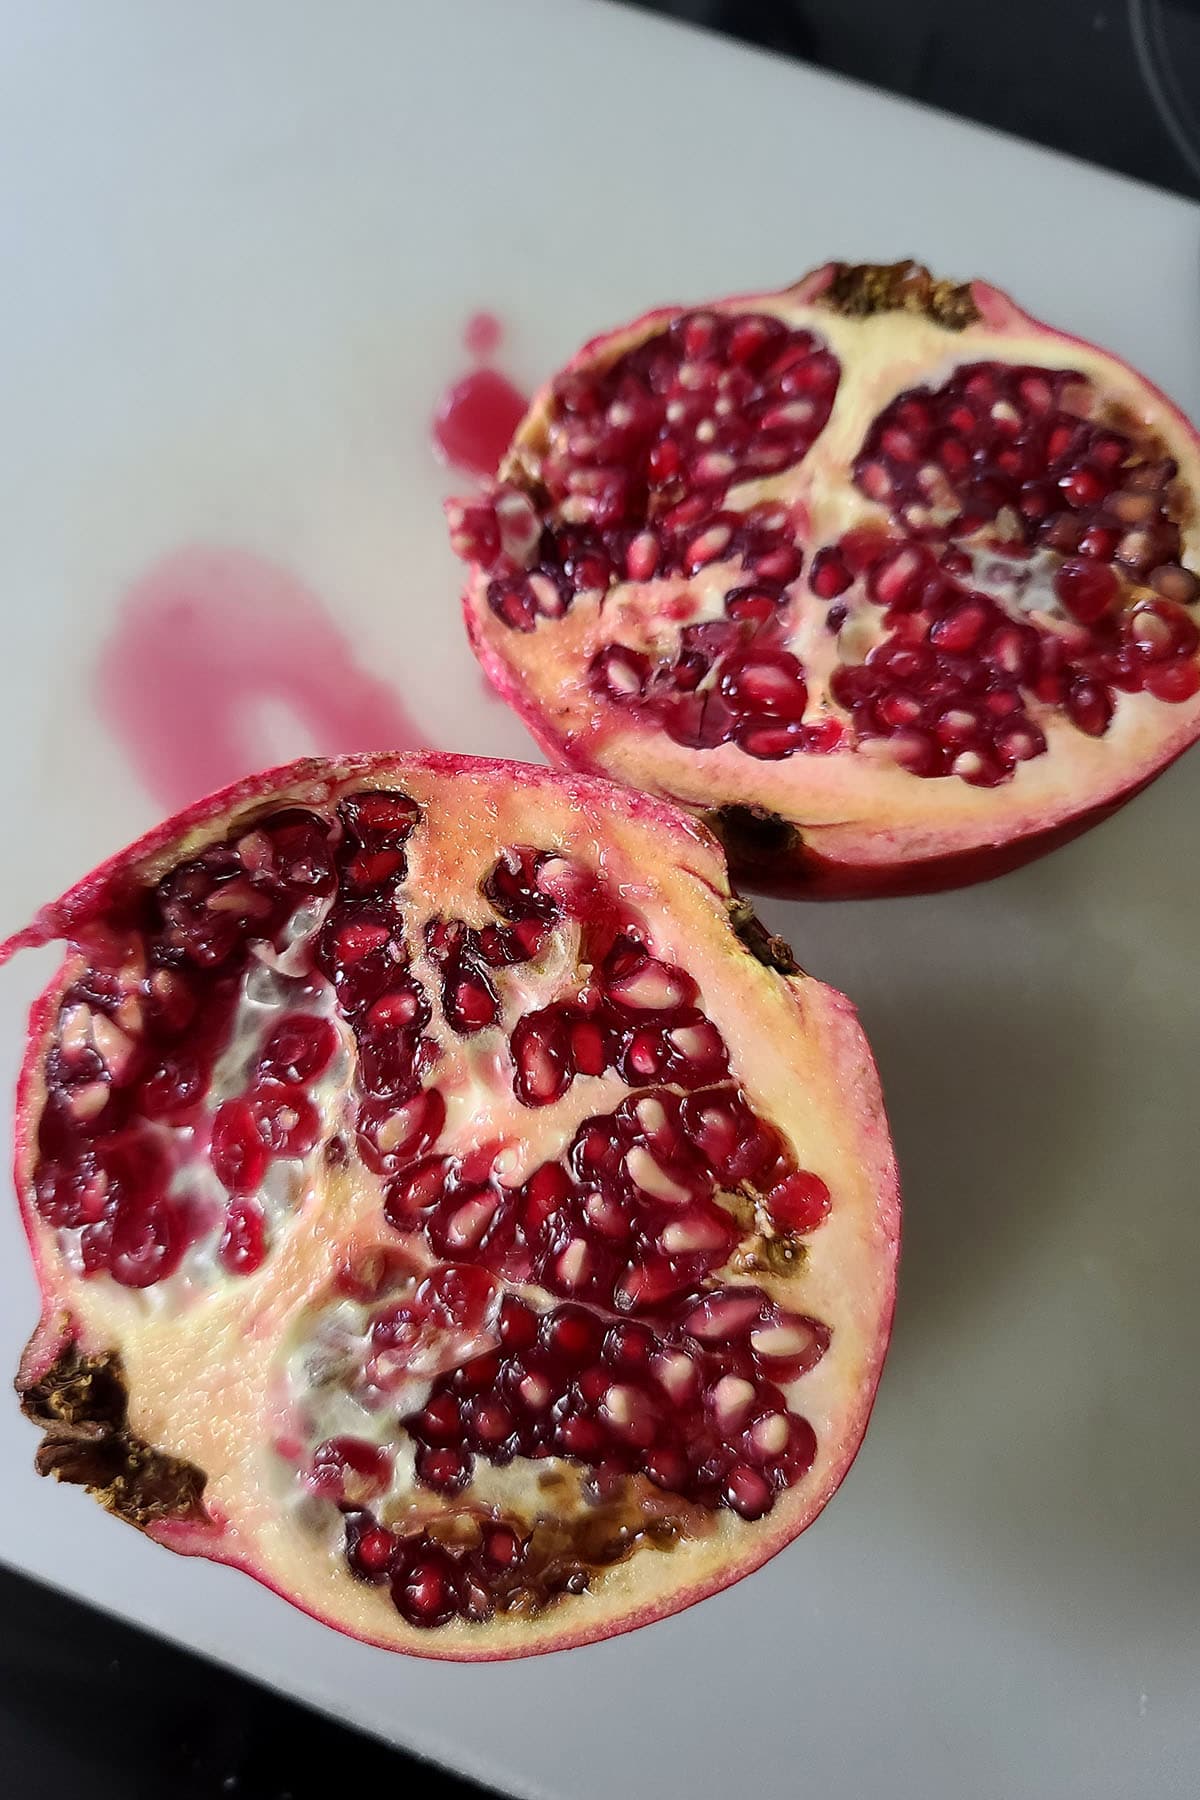 A pomegranate cut in half, on a cutting board.